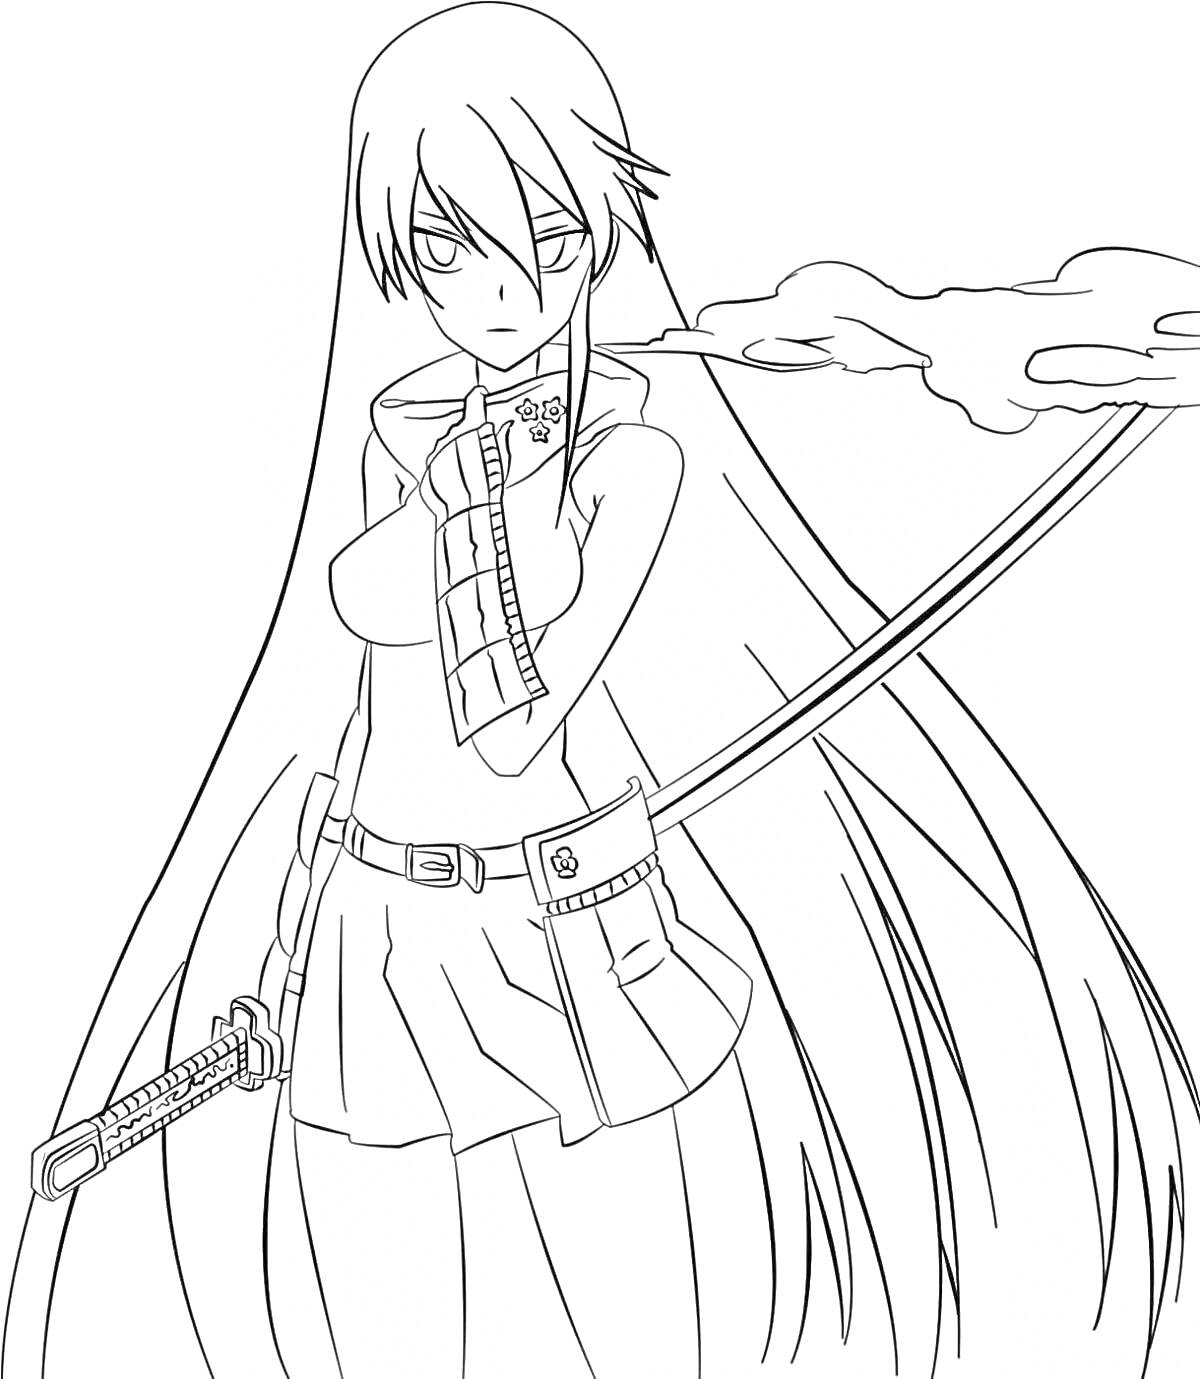 Раскраска Девушка с мечом и длинными волосами, одета в топ с рукавами и юбку, ножны меча прикреплены к поясу.